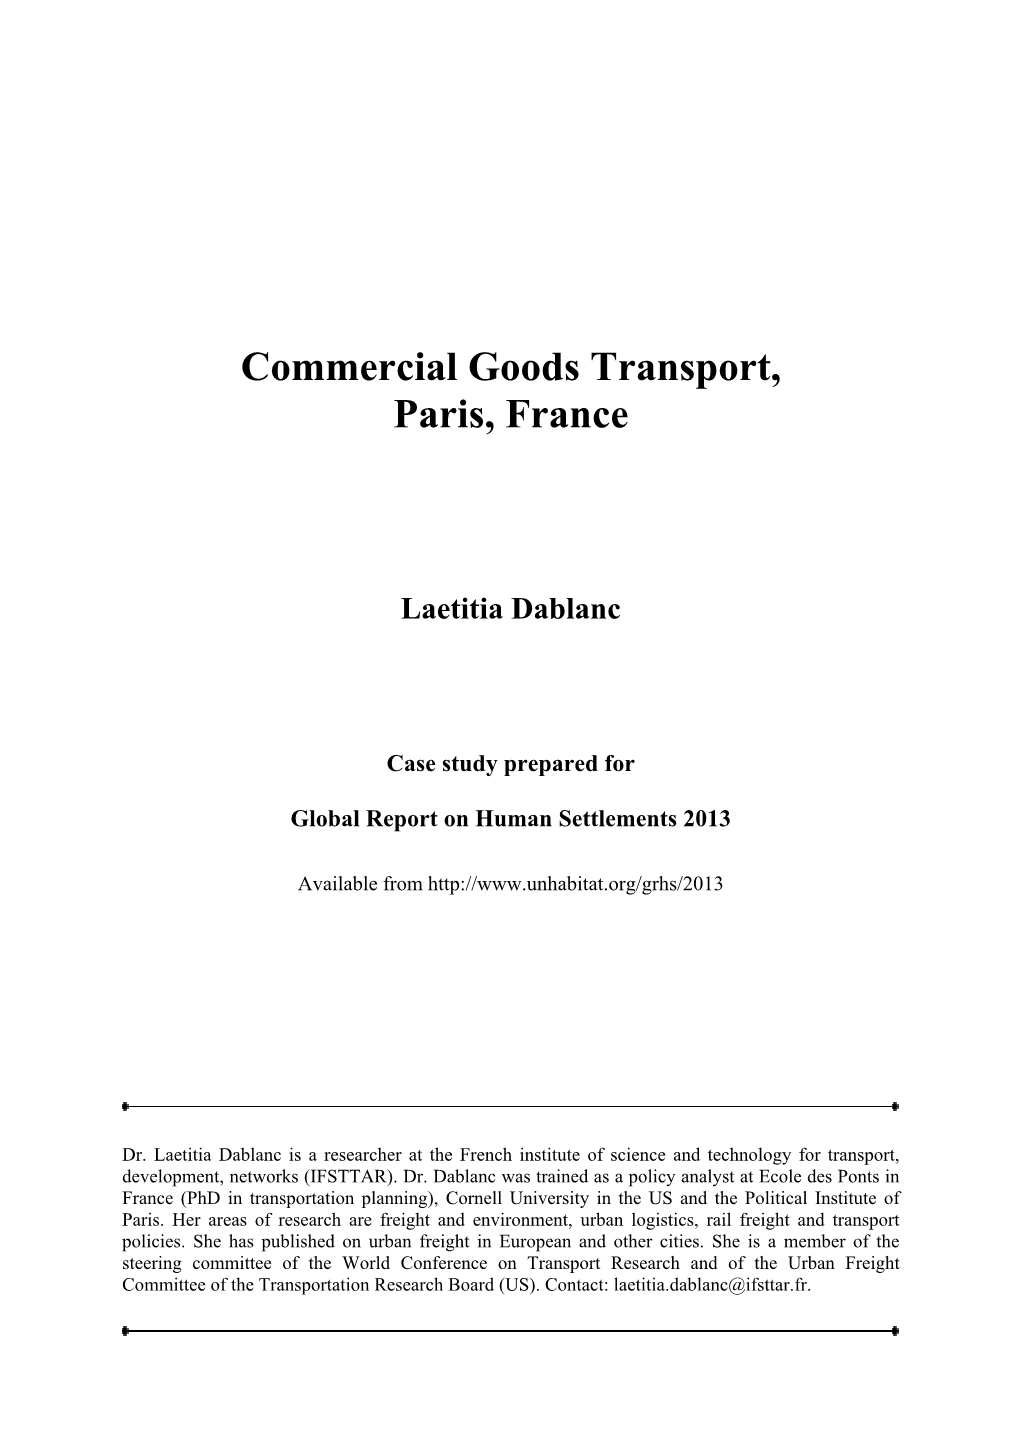 Commercial Goods Transport, Paris, France